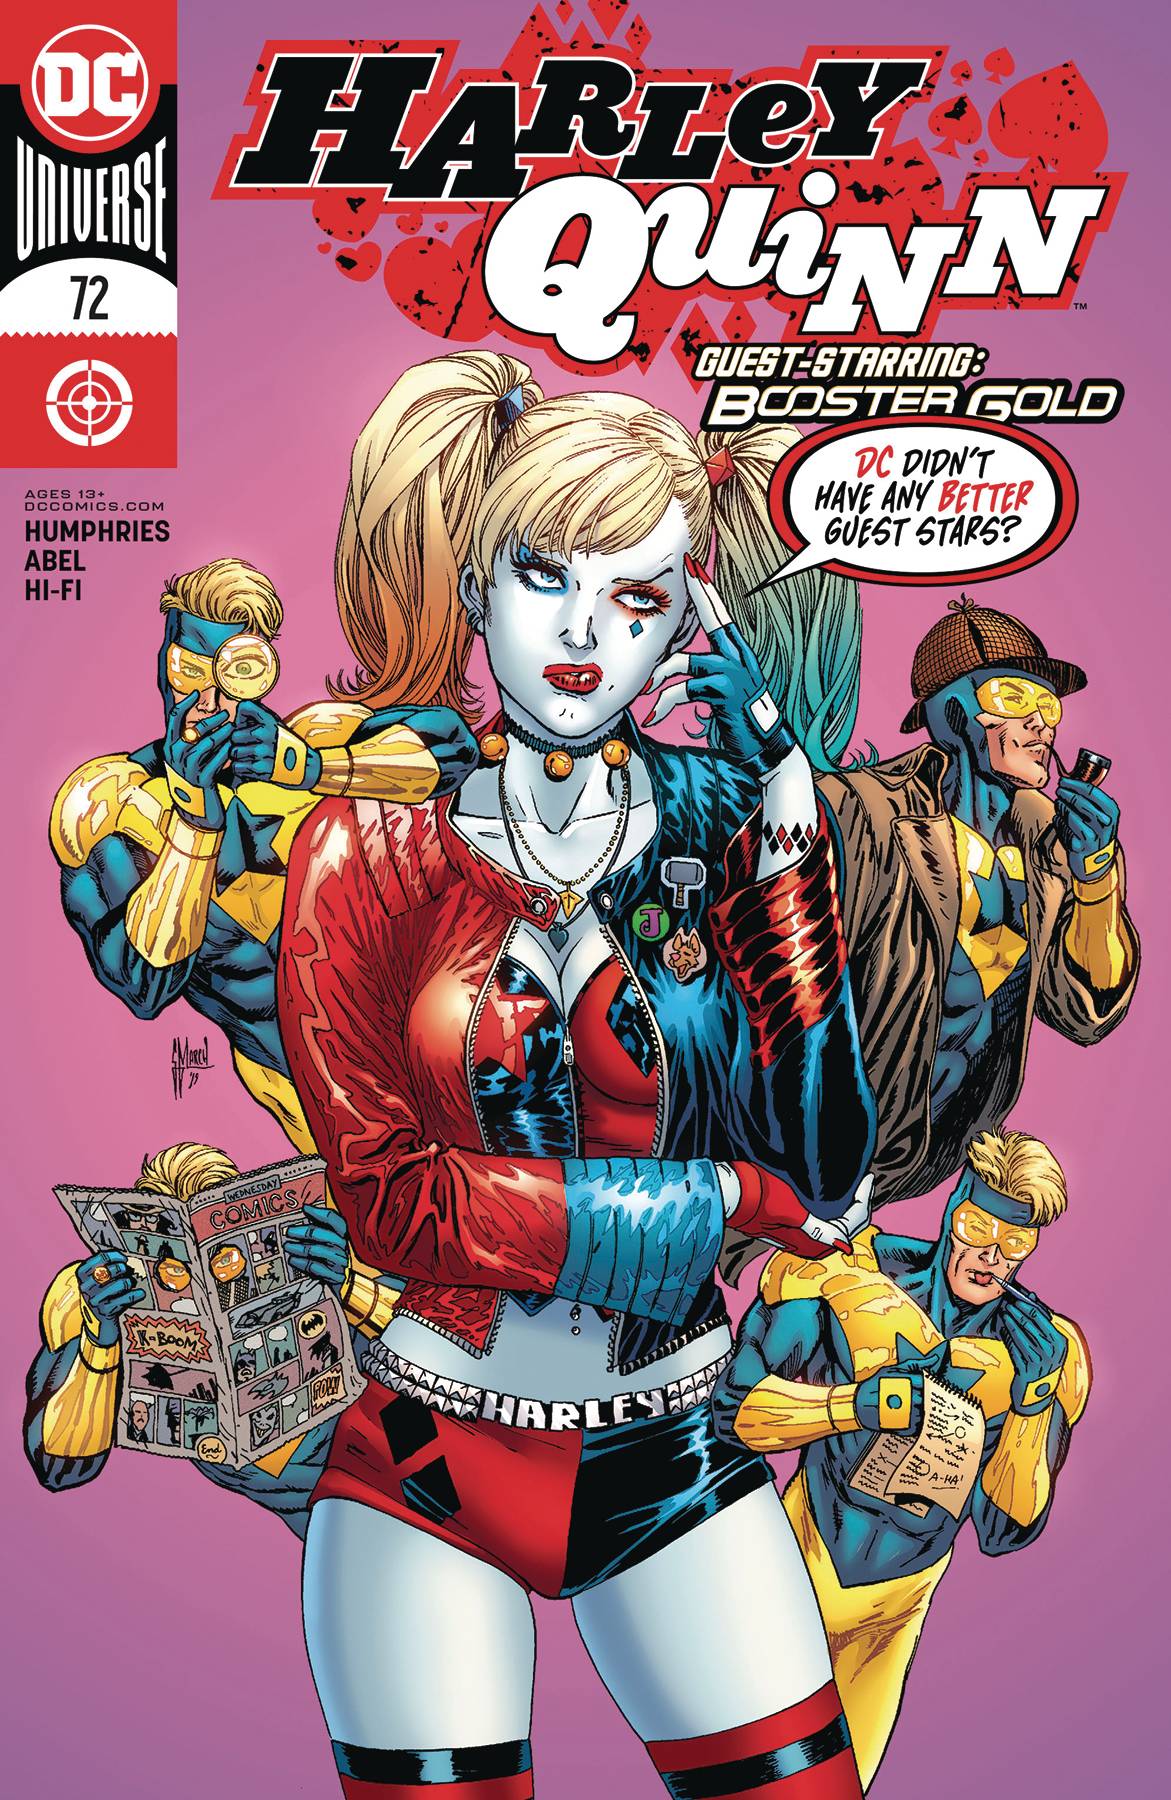 Harley Quinn (3rd Series) 72 Comic Book NM